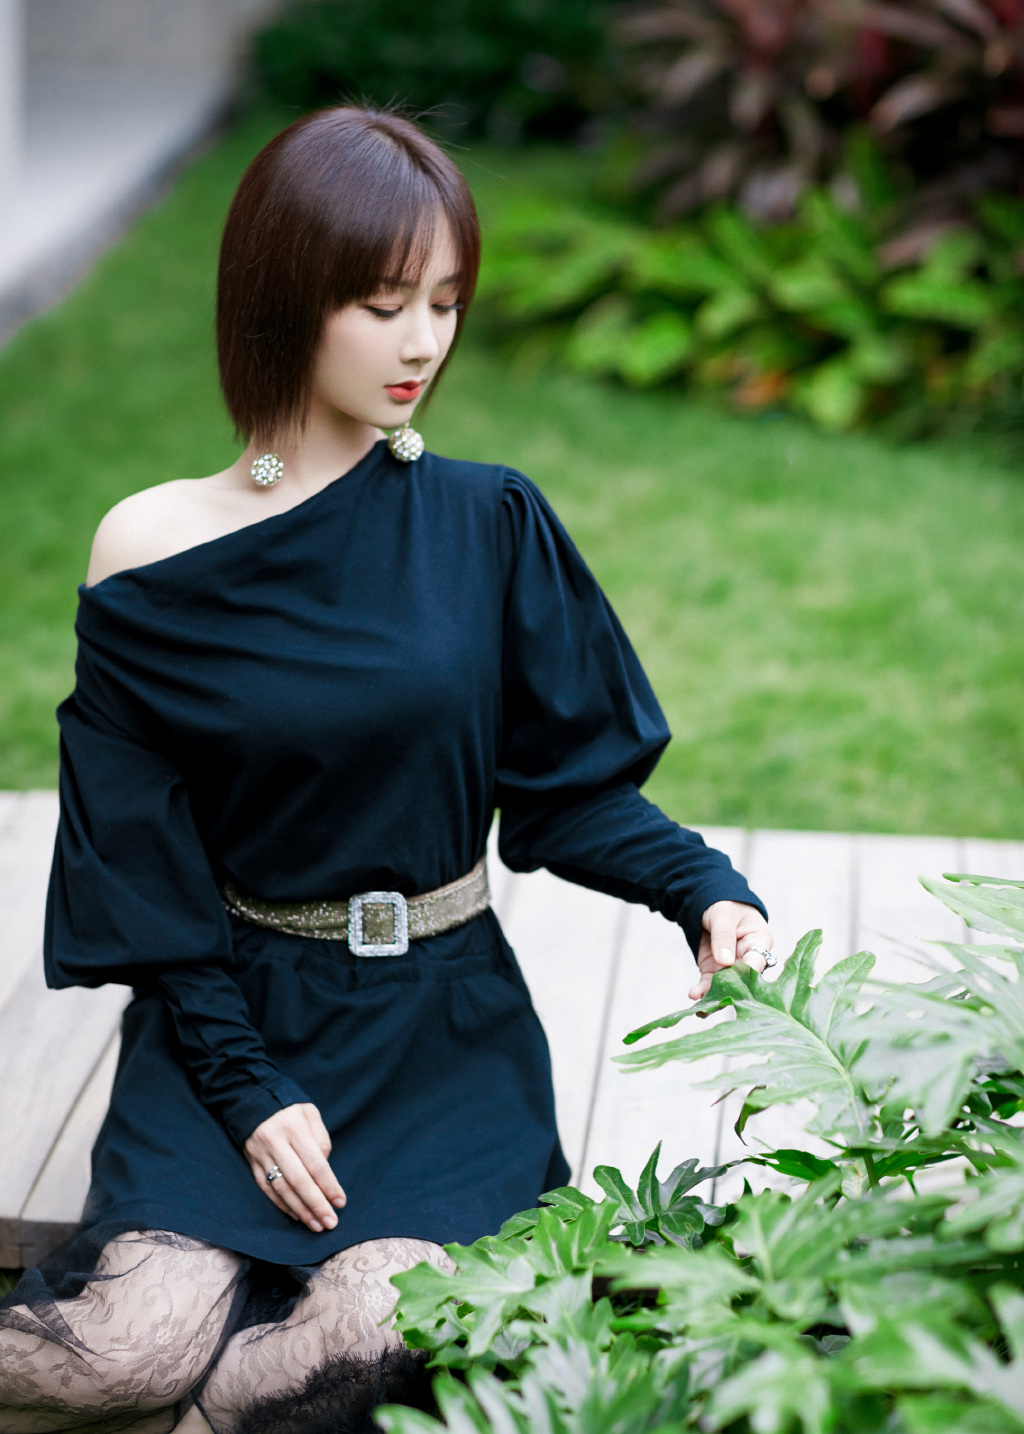 杨紫短发黑裙优雅花园写真图片59